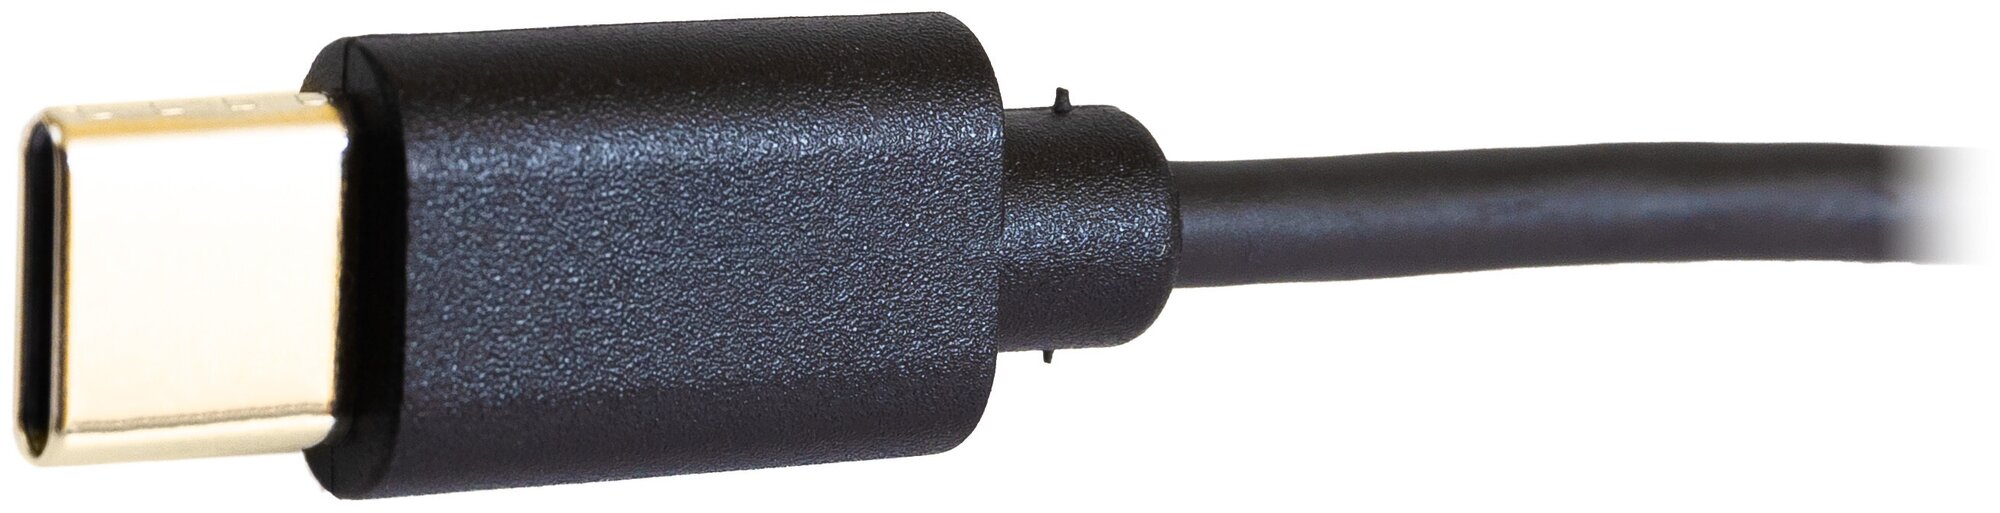 Проводные наушники ADDASOUND Crystal SR2732c (UC), с микрофоном / разъем USB-C, для компьютера с шумоподавлением / Stereo (ADD-CRYSTAL-SR2732c)